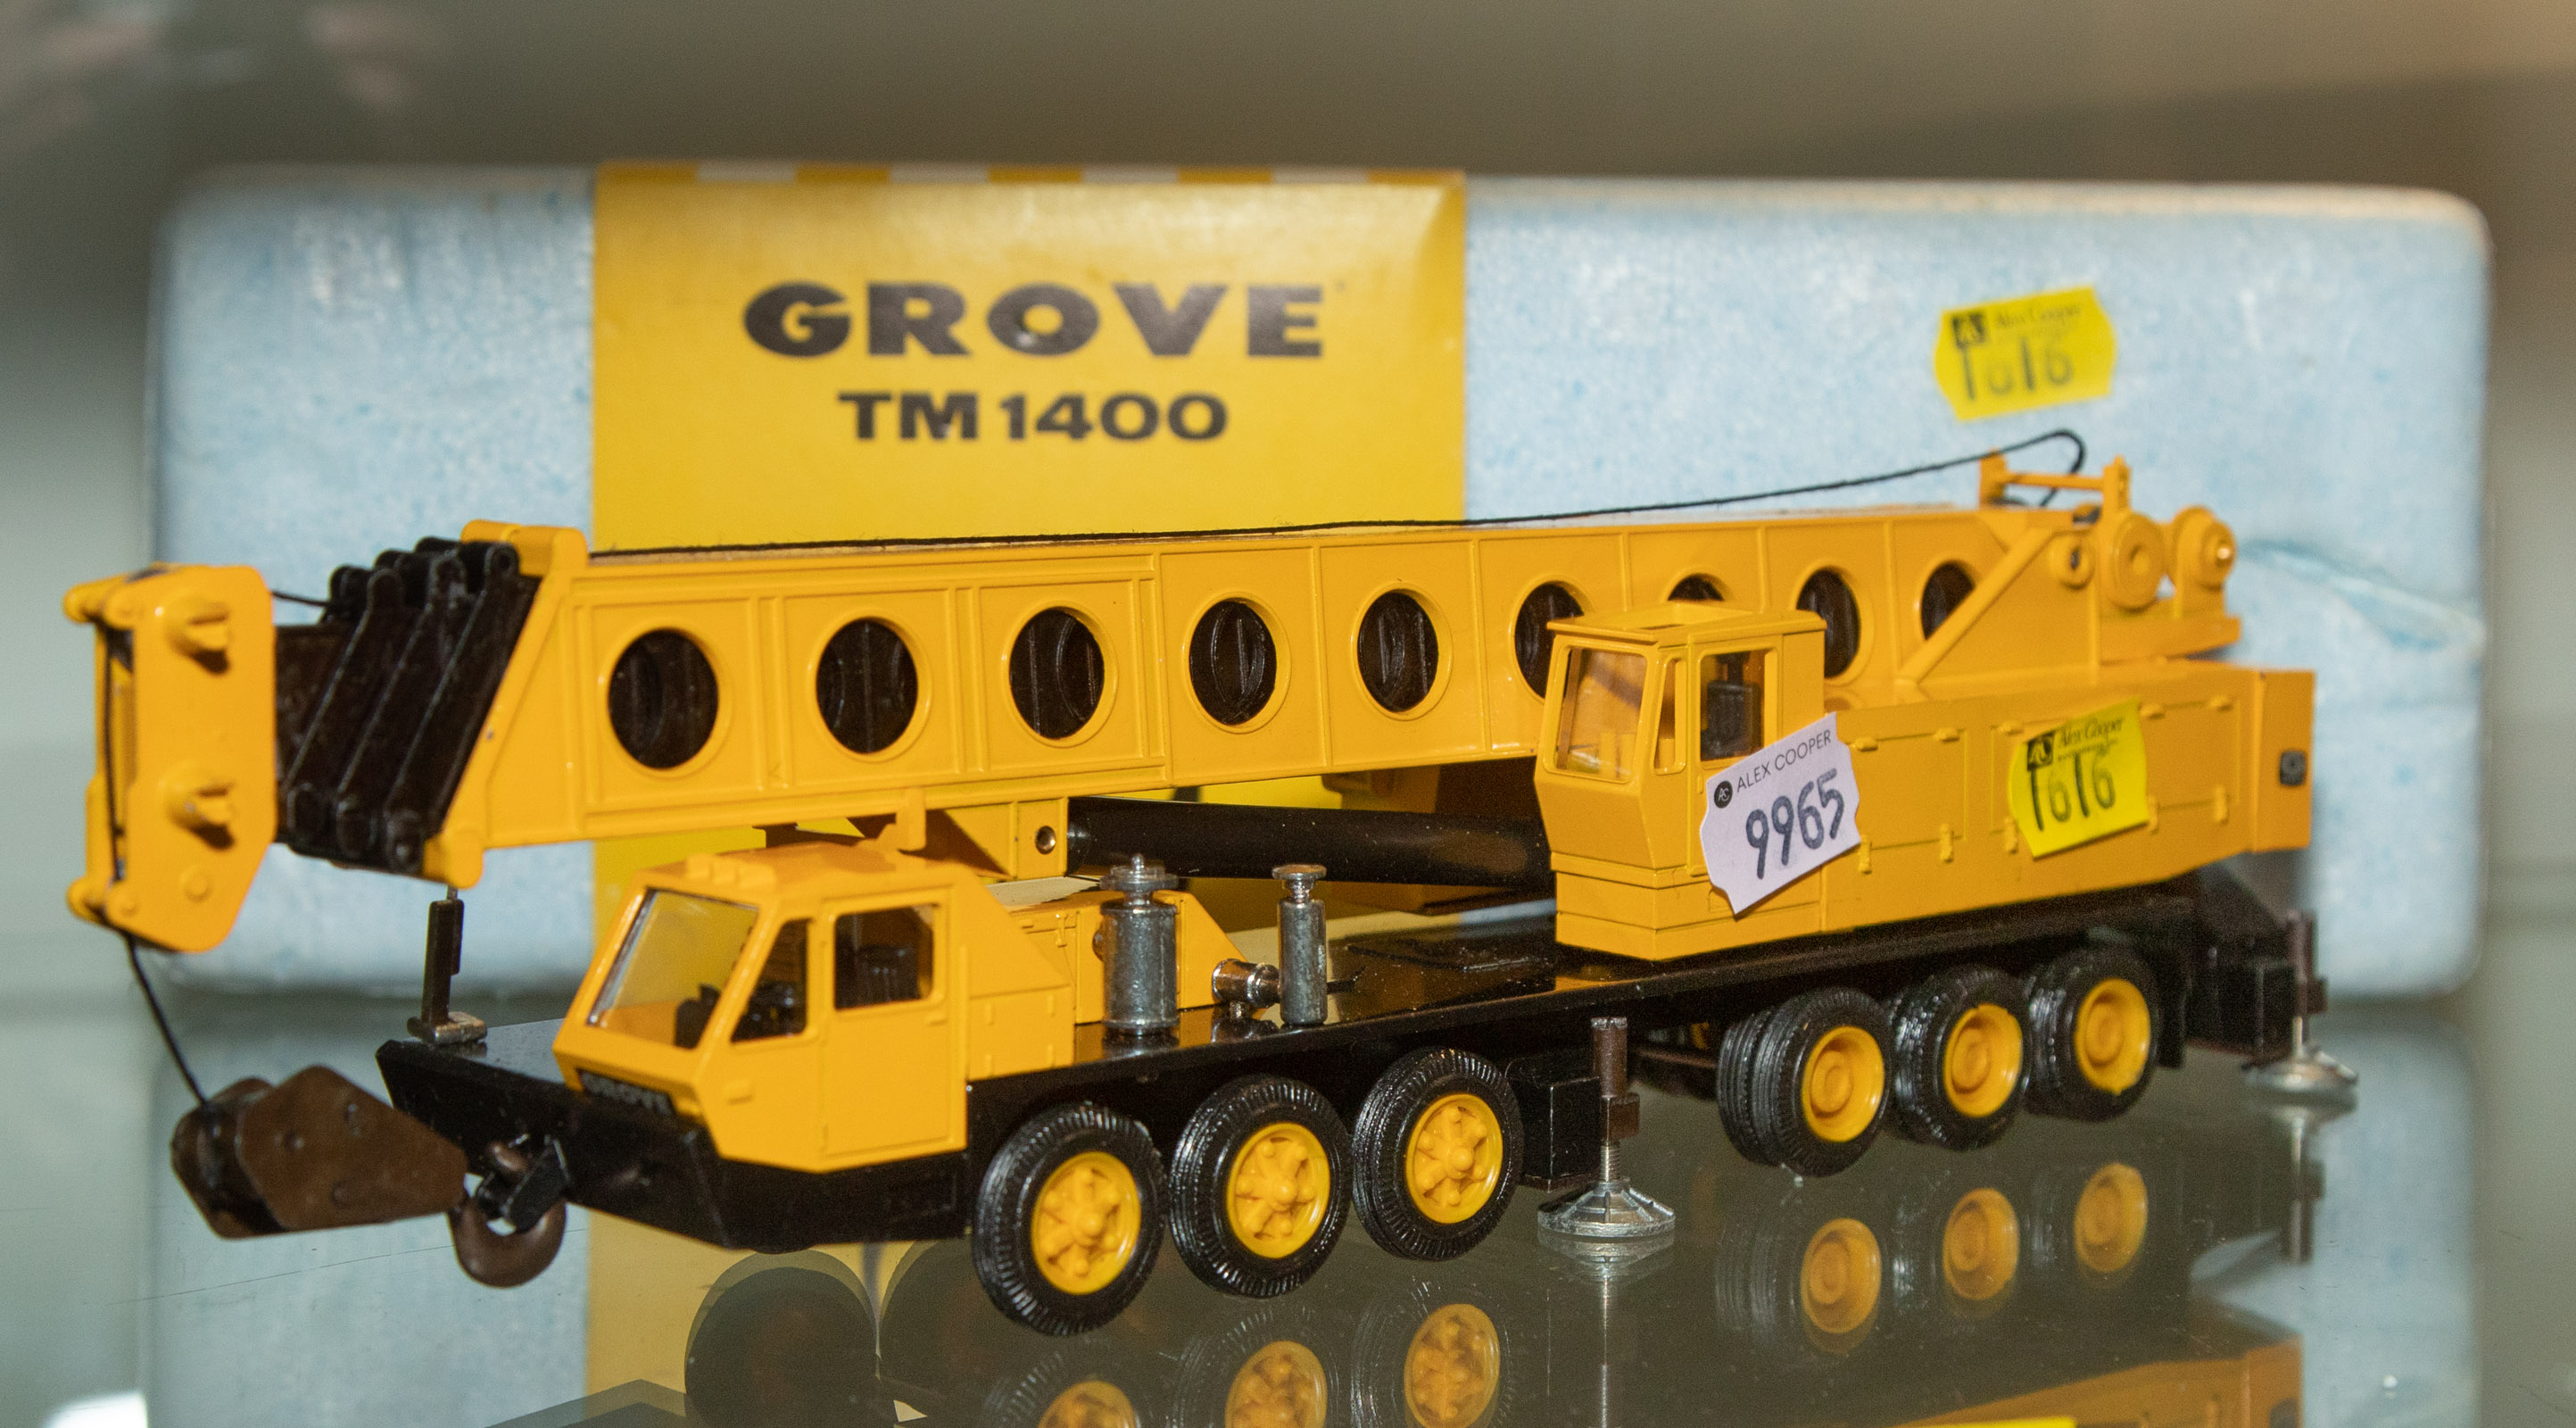 GROVE TM 1400 MOBILE TOY CRANE 335068